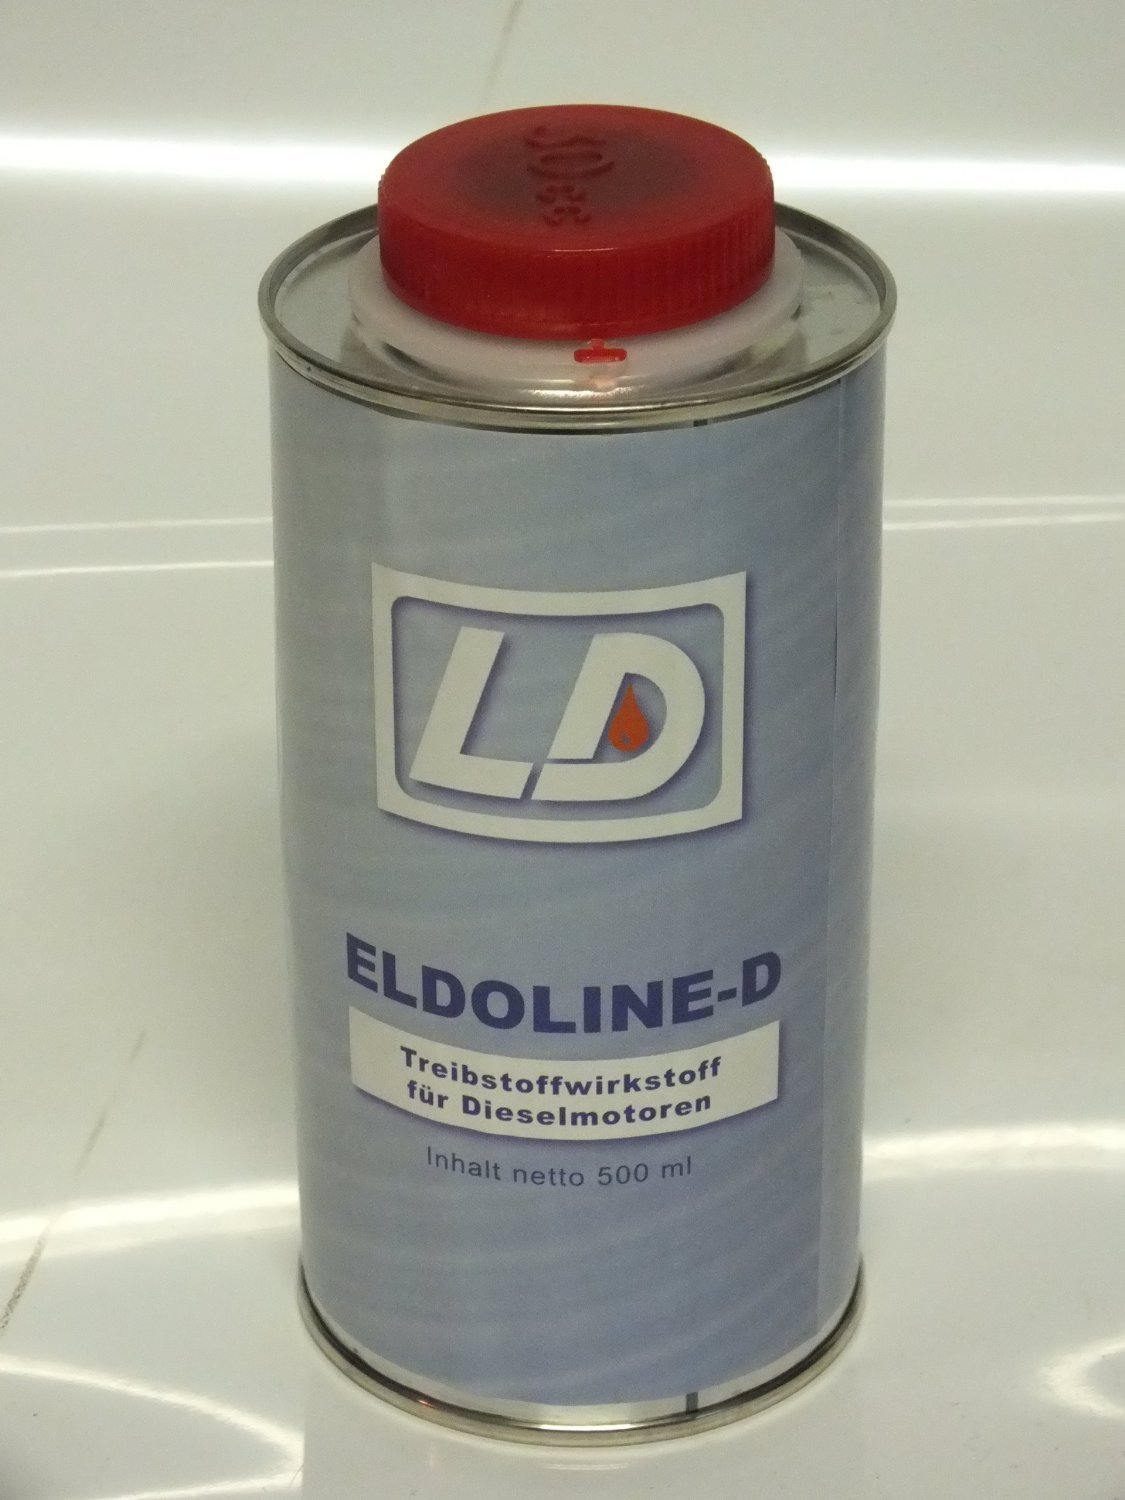 LD Eldoline-D Dieselzusatz 500ml (1) von LD Lubricating Dutchman GmbH